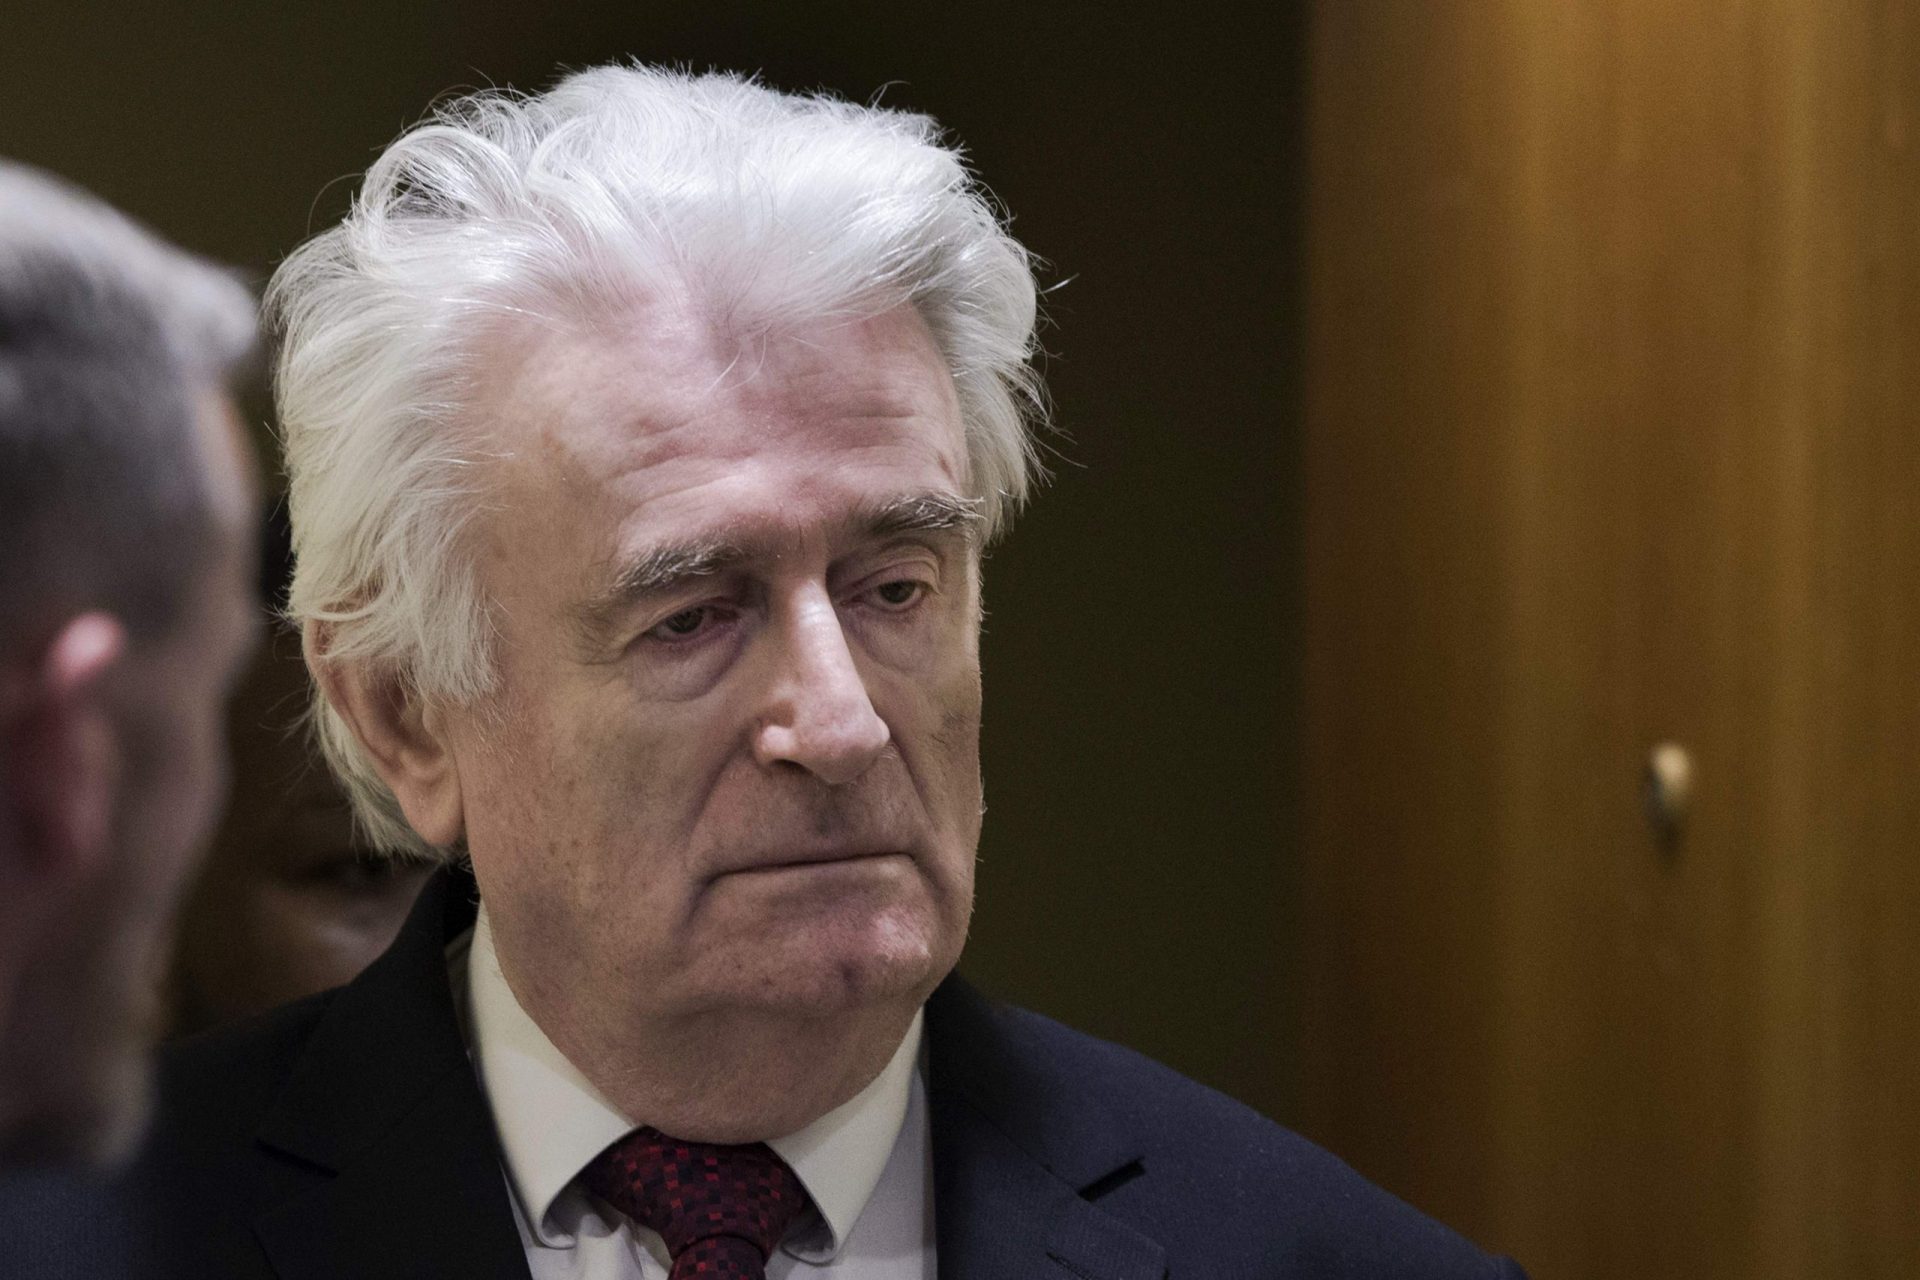 “Acho que o veredito é histórico para a justiça”. Karadzic condenado a prisão perpétua